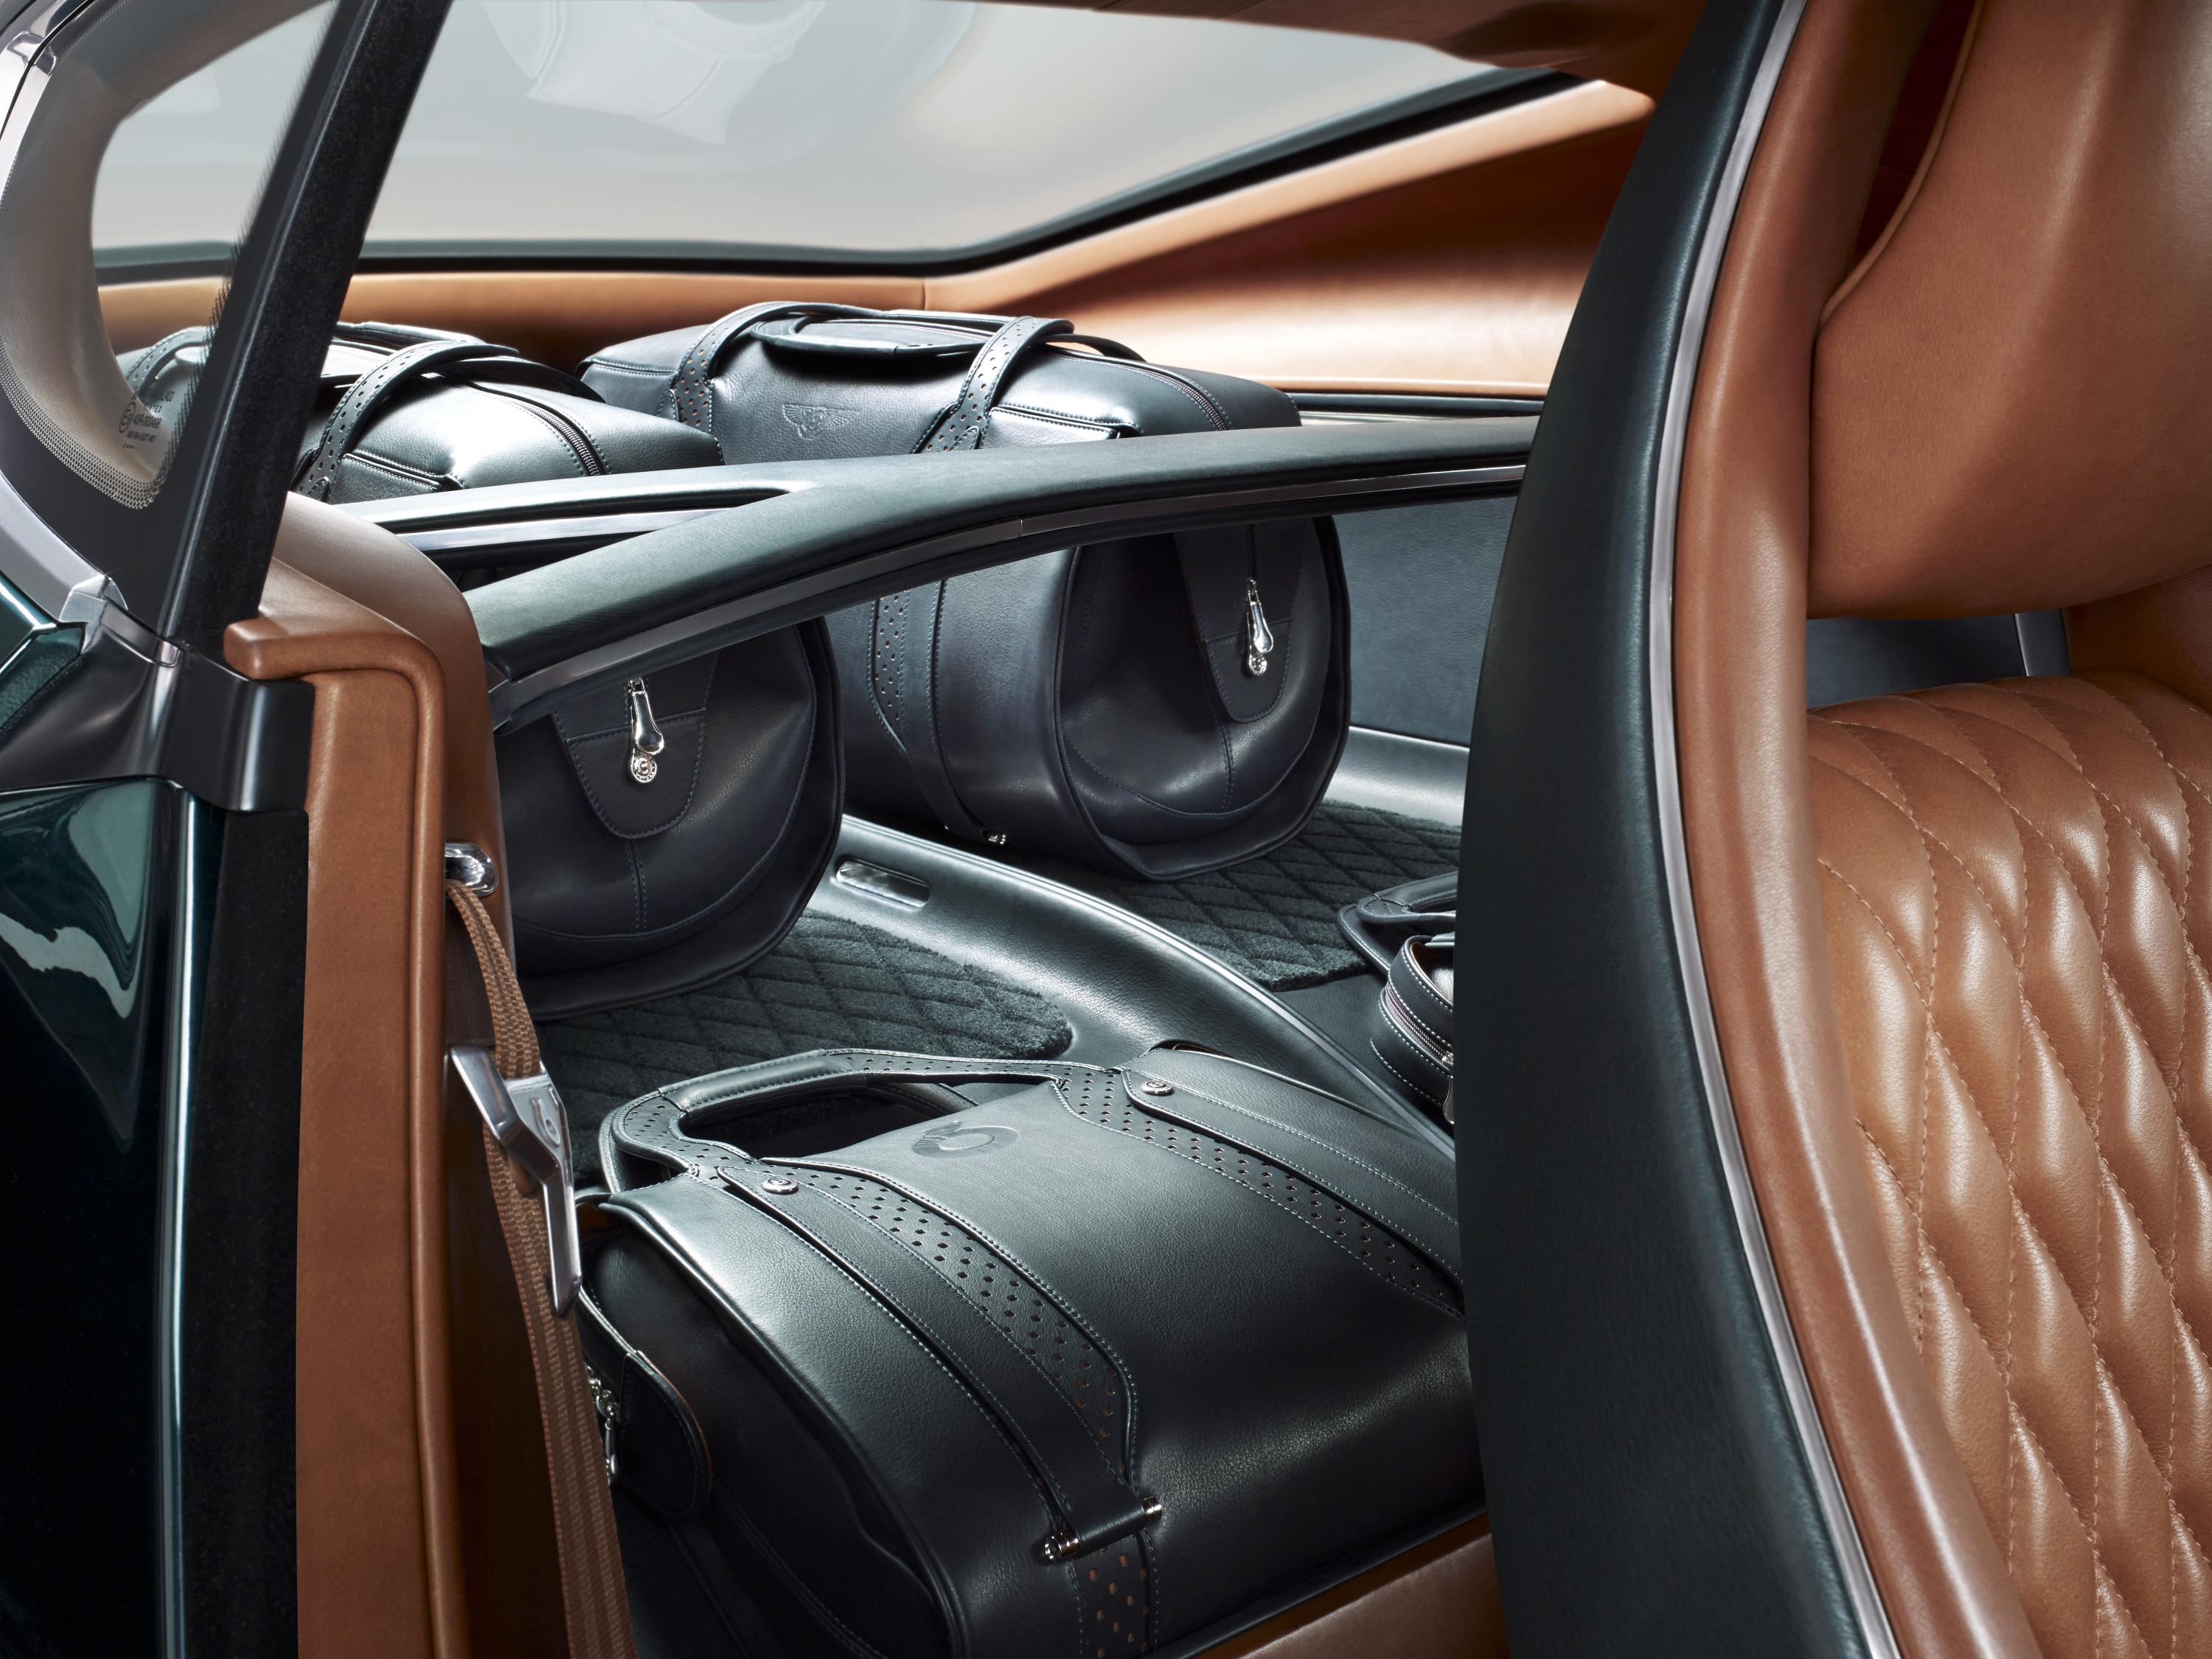 Bentley Exp10 Speed 6 Concept Exclusive Video Access Inside Bentley S Future Evo